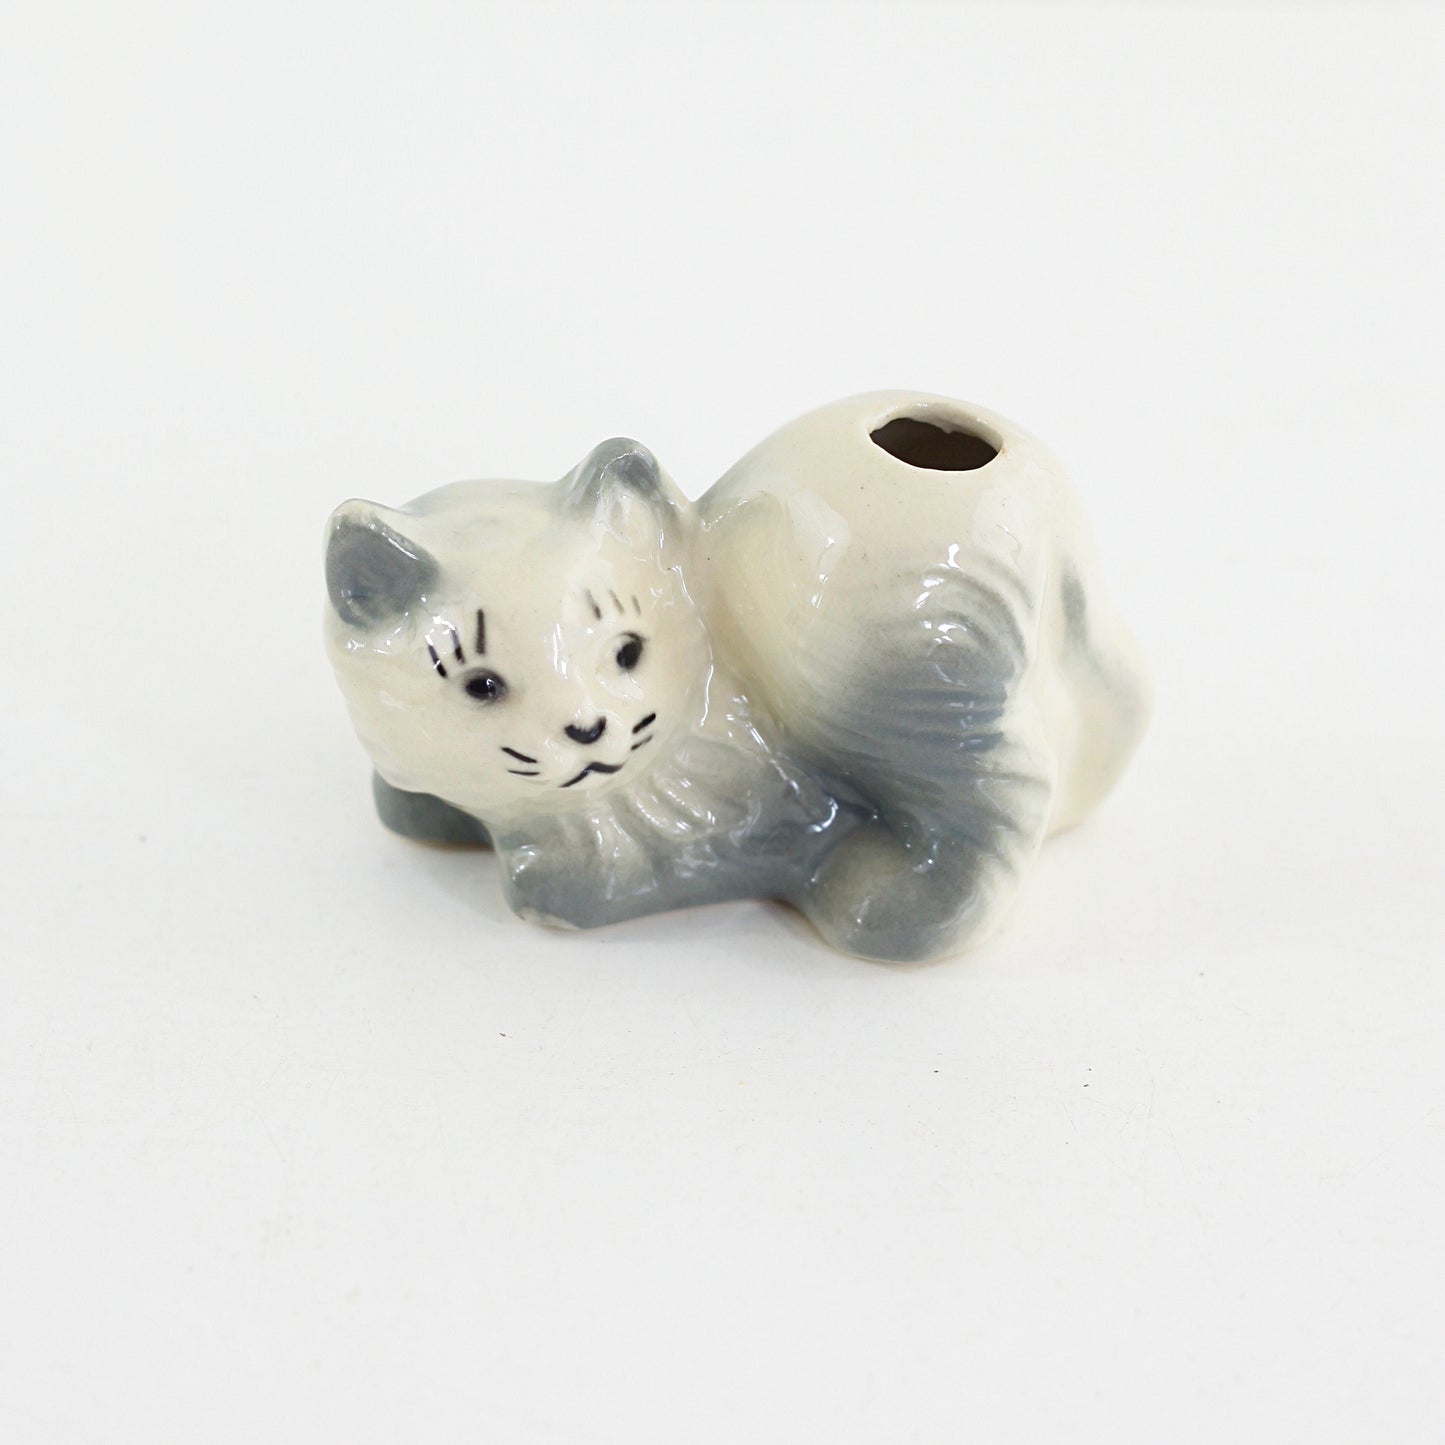 SOLD - Vintage Ceramic Cat Vase / Planter / Pencil Holder